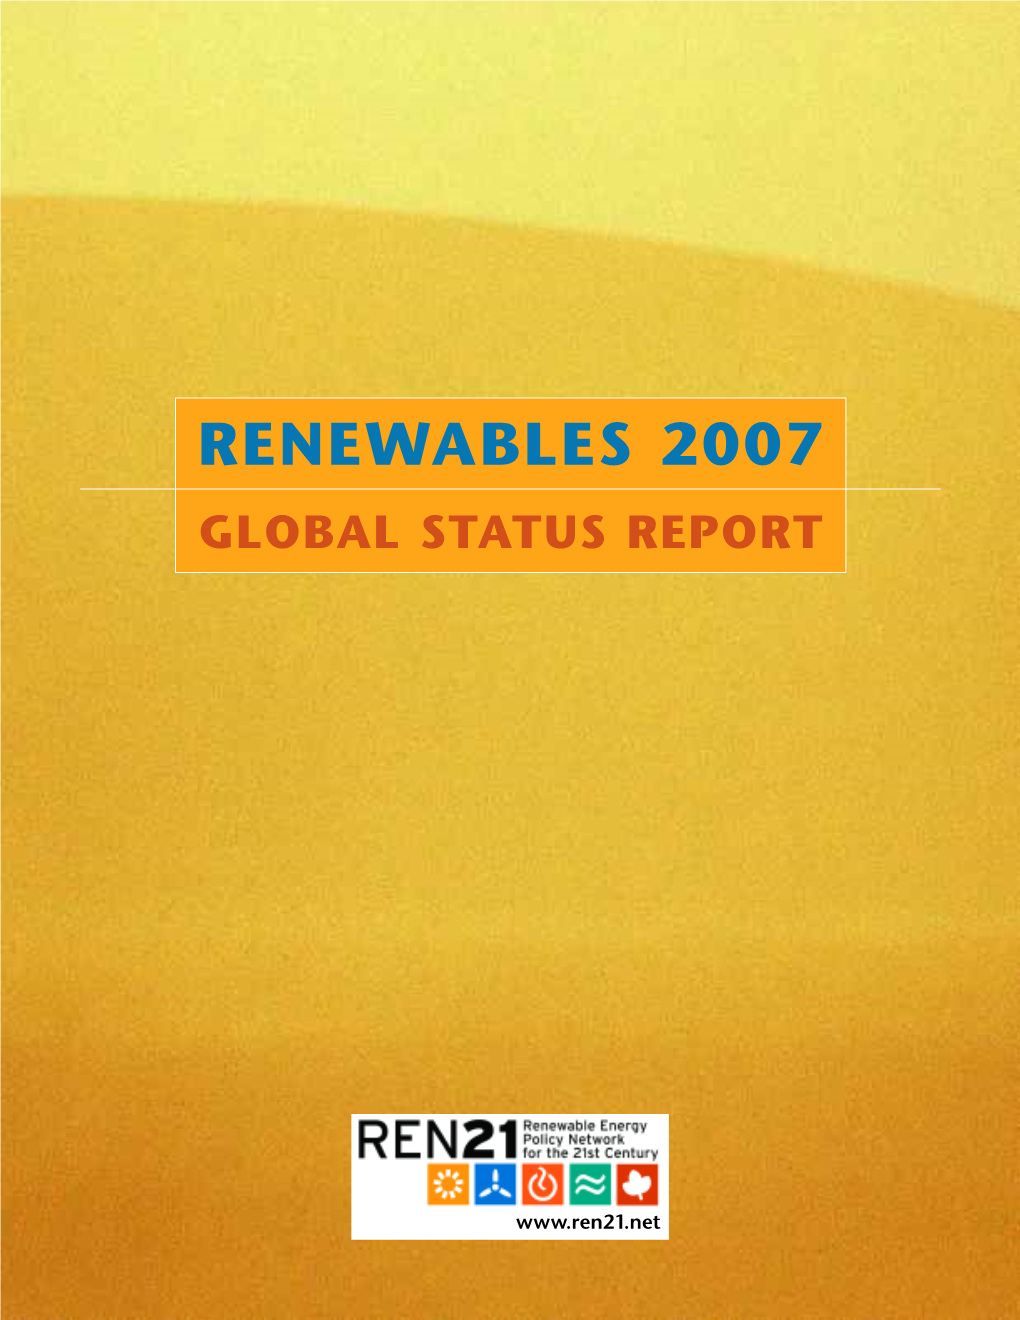 Renewables 2007 Global Status Report